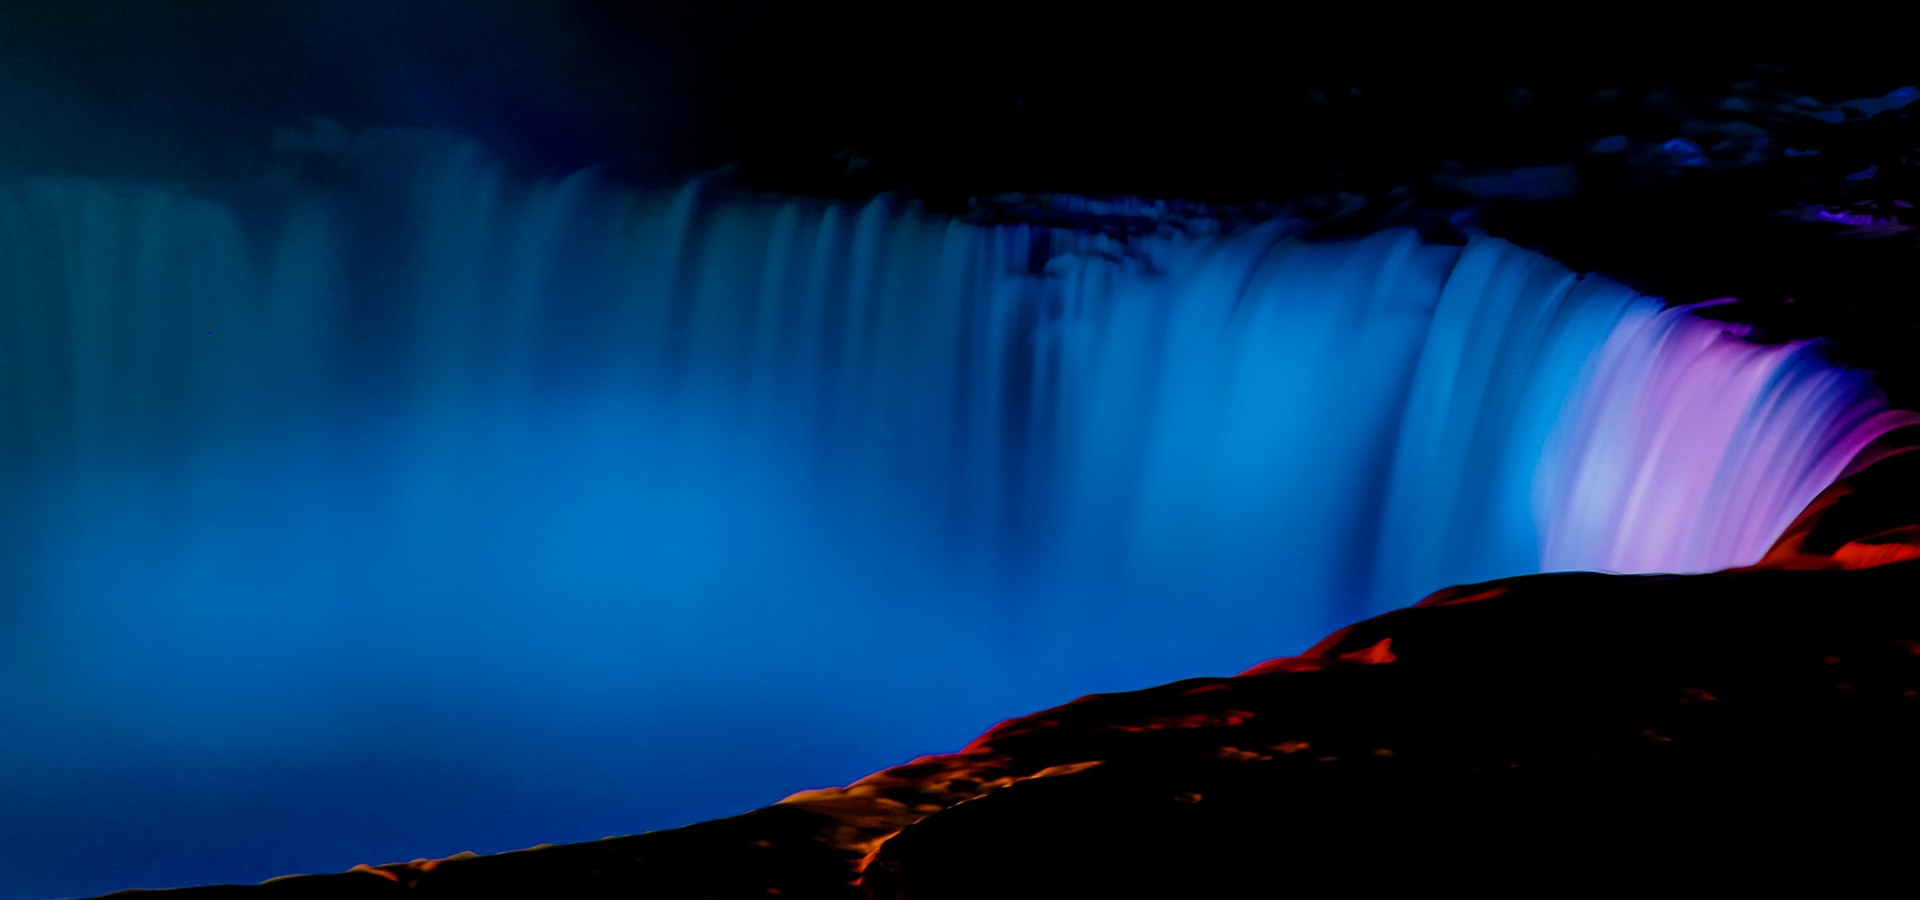 De beroemde Niagara wattervallen worden in de avond spectaculair verlicht in mooi wit, blauw en roze licht.